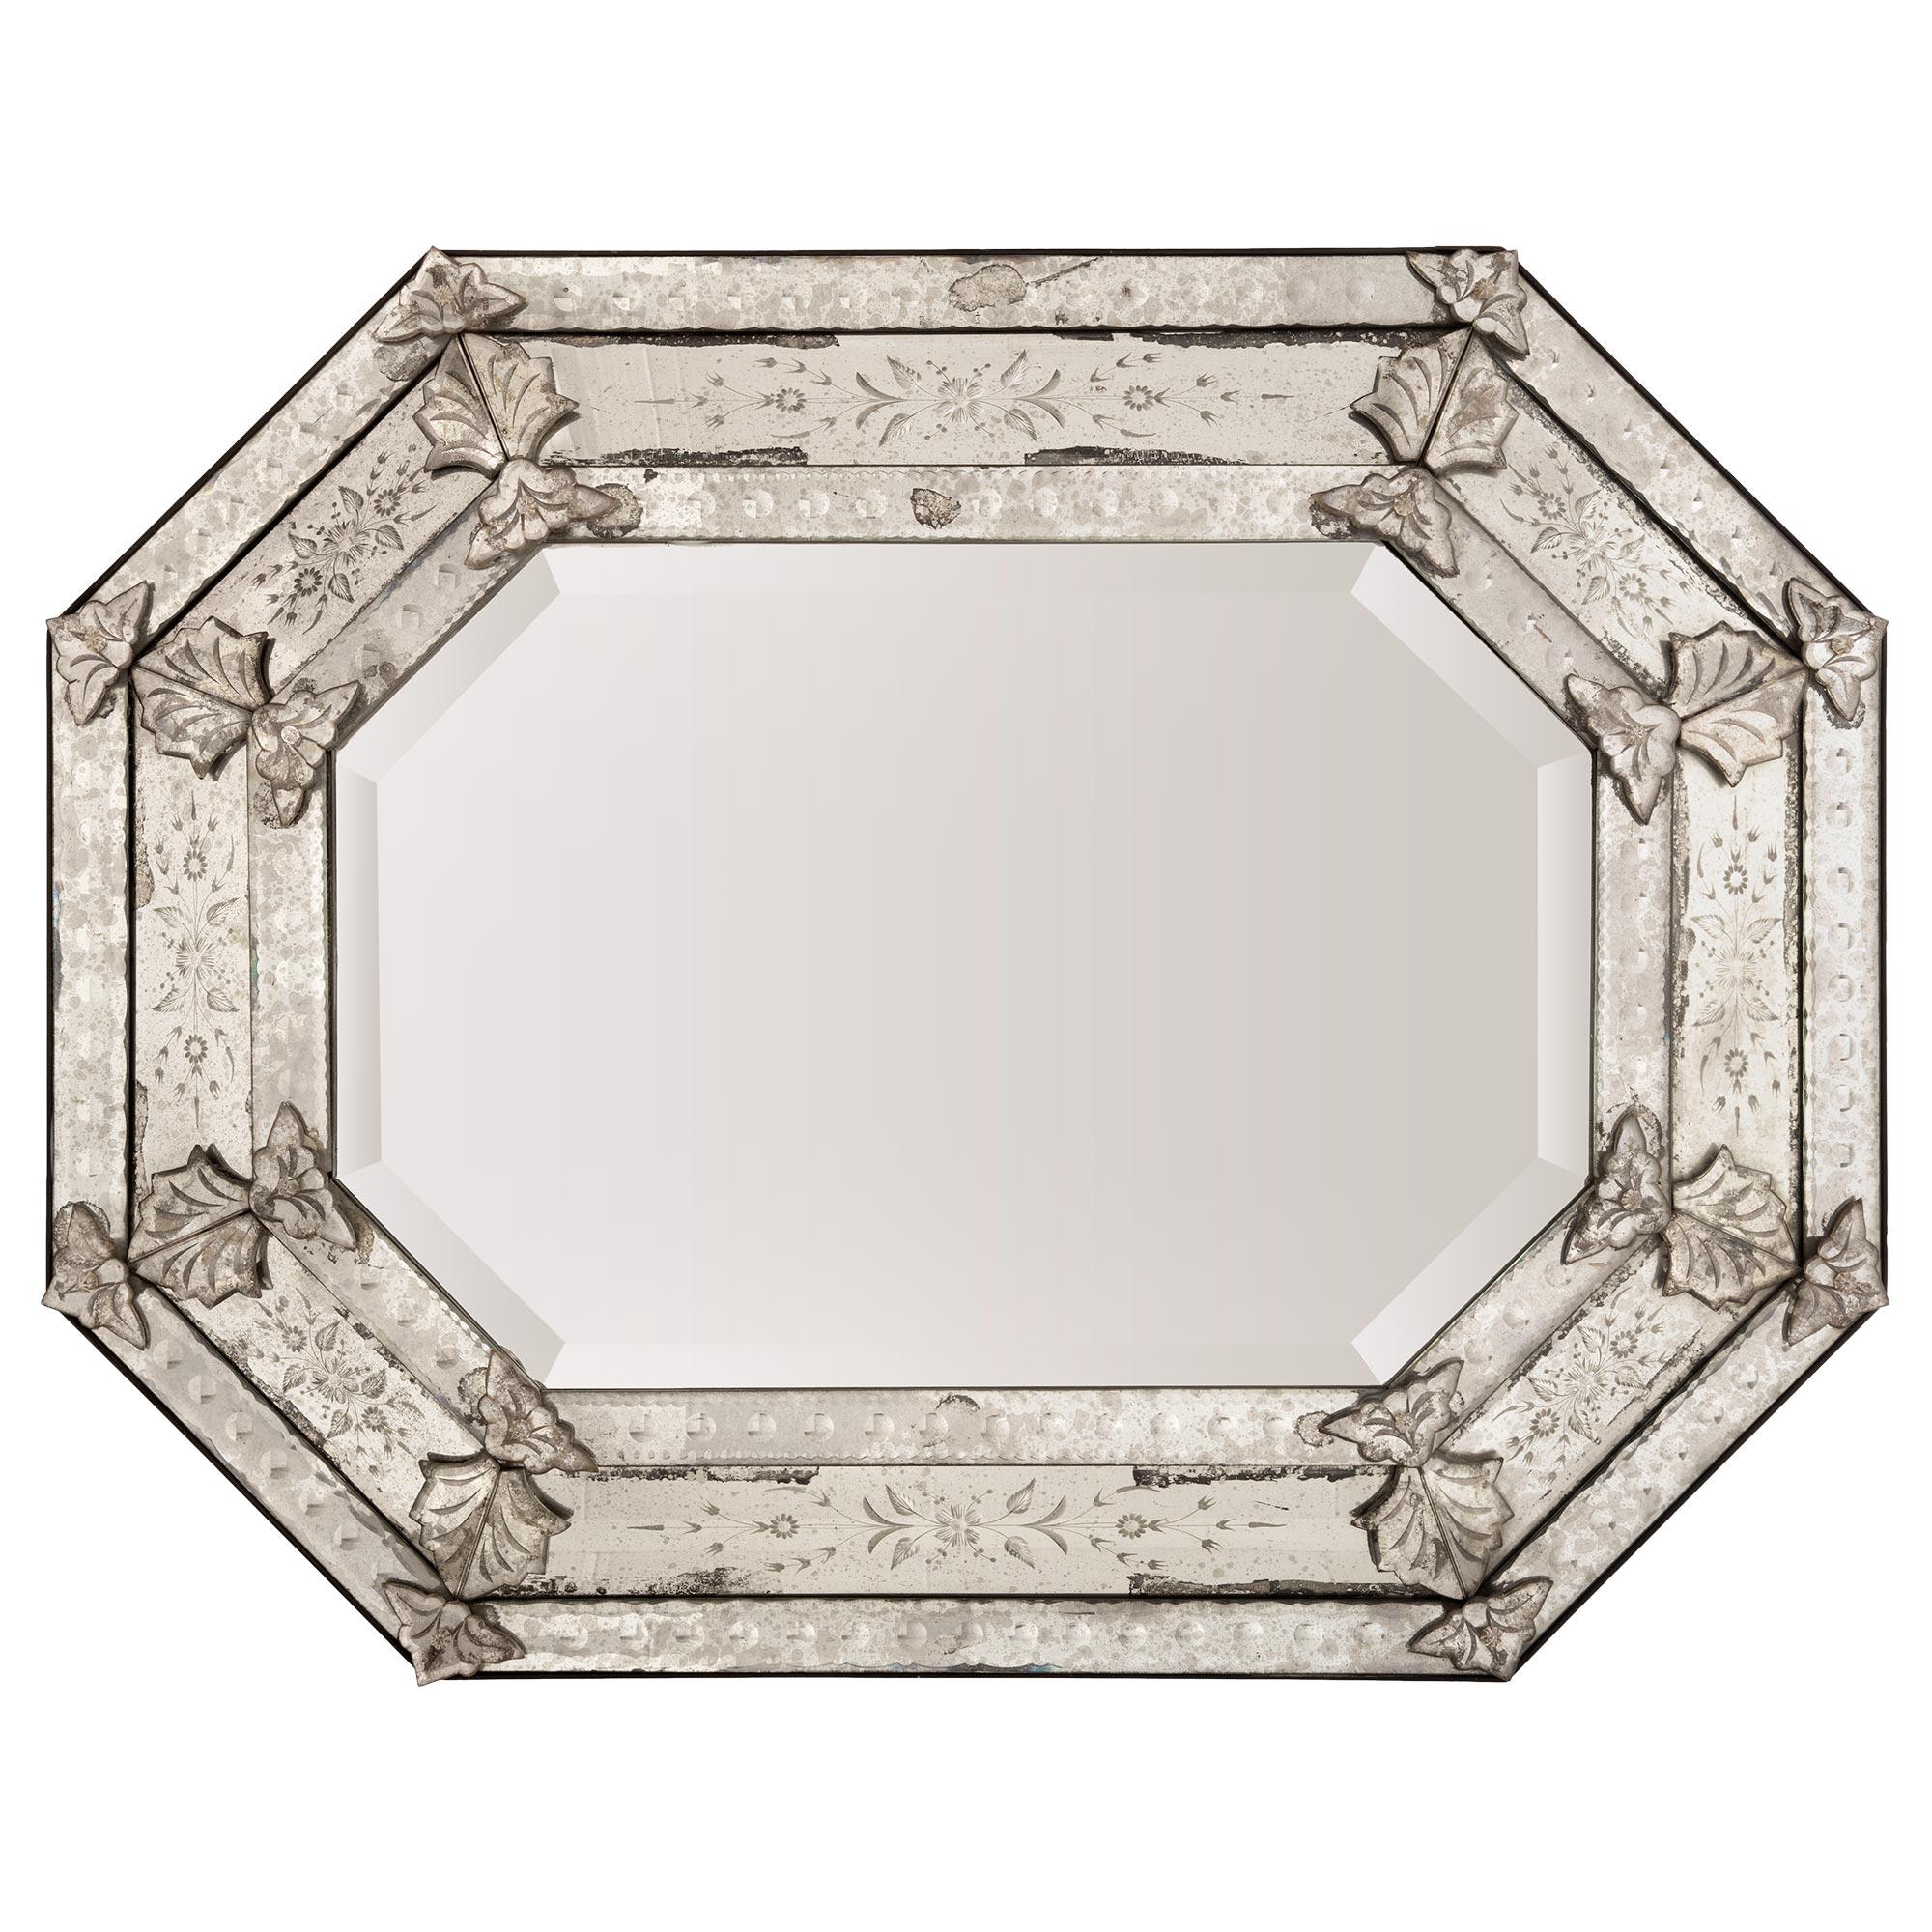 Magnifique miroir vénitien italien du 19e siècle. Le miroir octogonal a conservé toutes ses belles plaques de miroir d'origine, la plaque de miroir centrale présentant une fine bordure biseautée. Les plaques de miroir extérieures présentent un motif